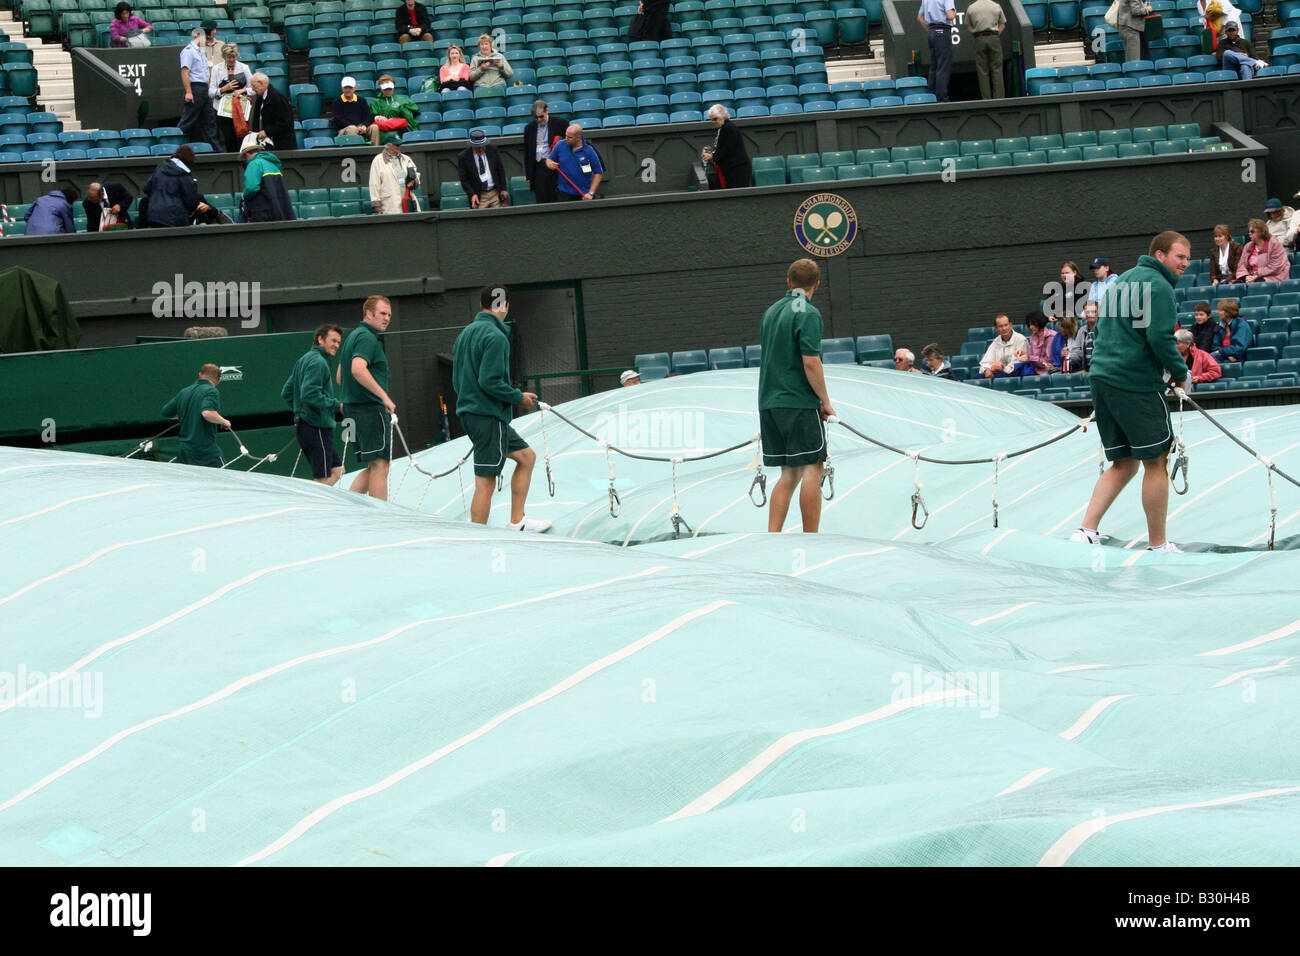 Le personnel au sol se préparent à déposer le couvercle sur le court central après une pluie retard au championnat de tennis de Wimbledon en Angleterre Banque D'Images